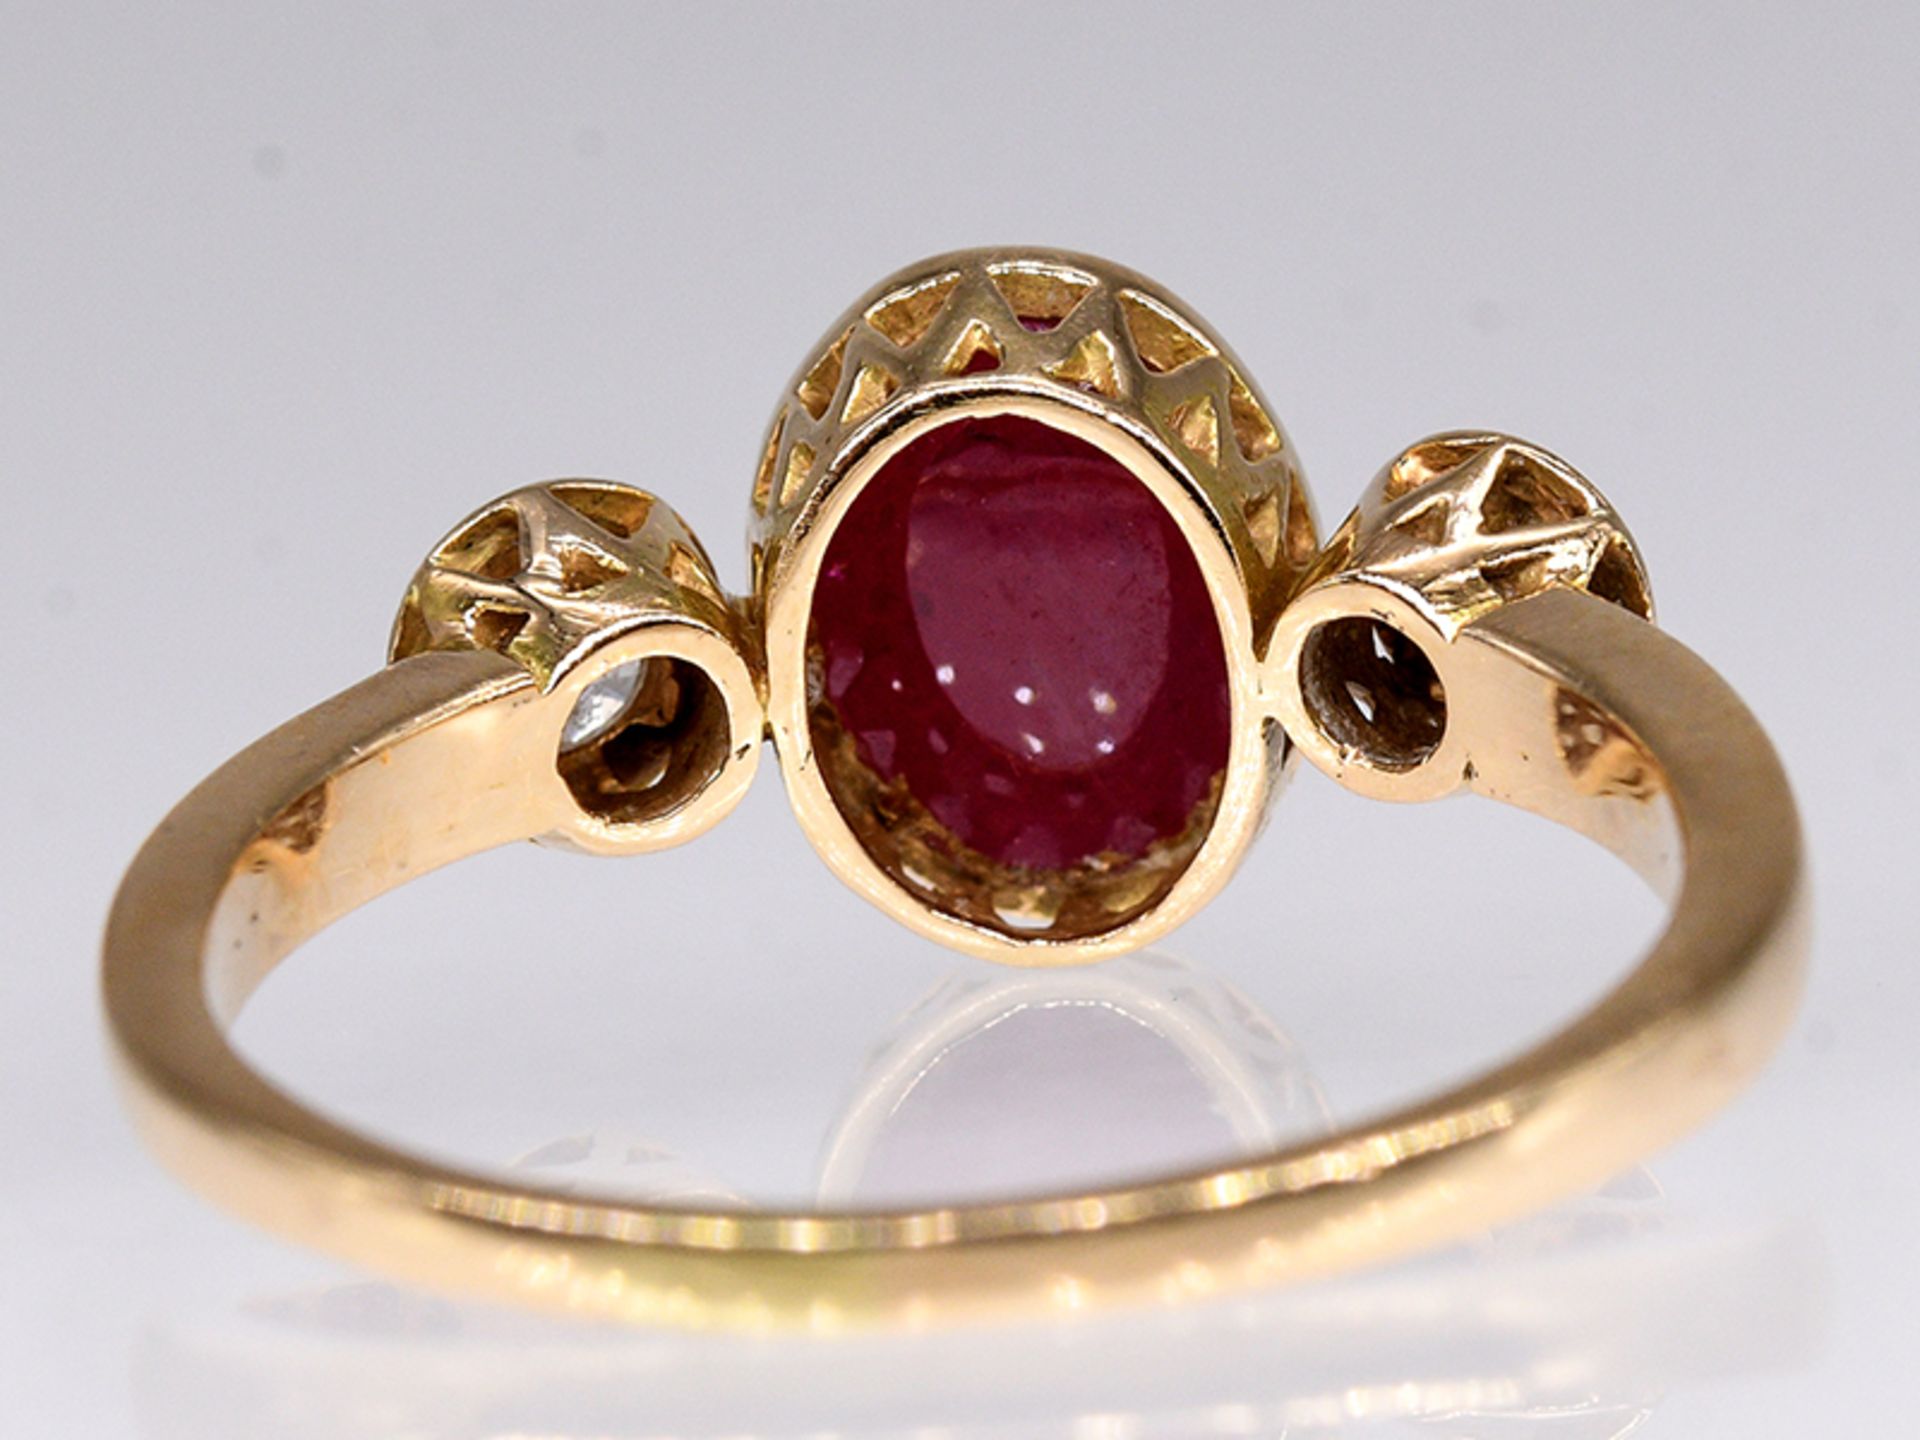 Ring mit Rubin-Cabochon und 2 Brillanten, zus. ca. 0,15 ct, 80- er Jahre. 585/- Gelbgold. - Bild 4 aus 4